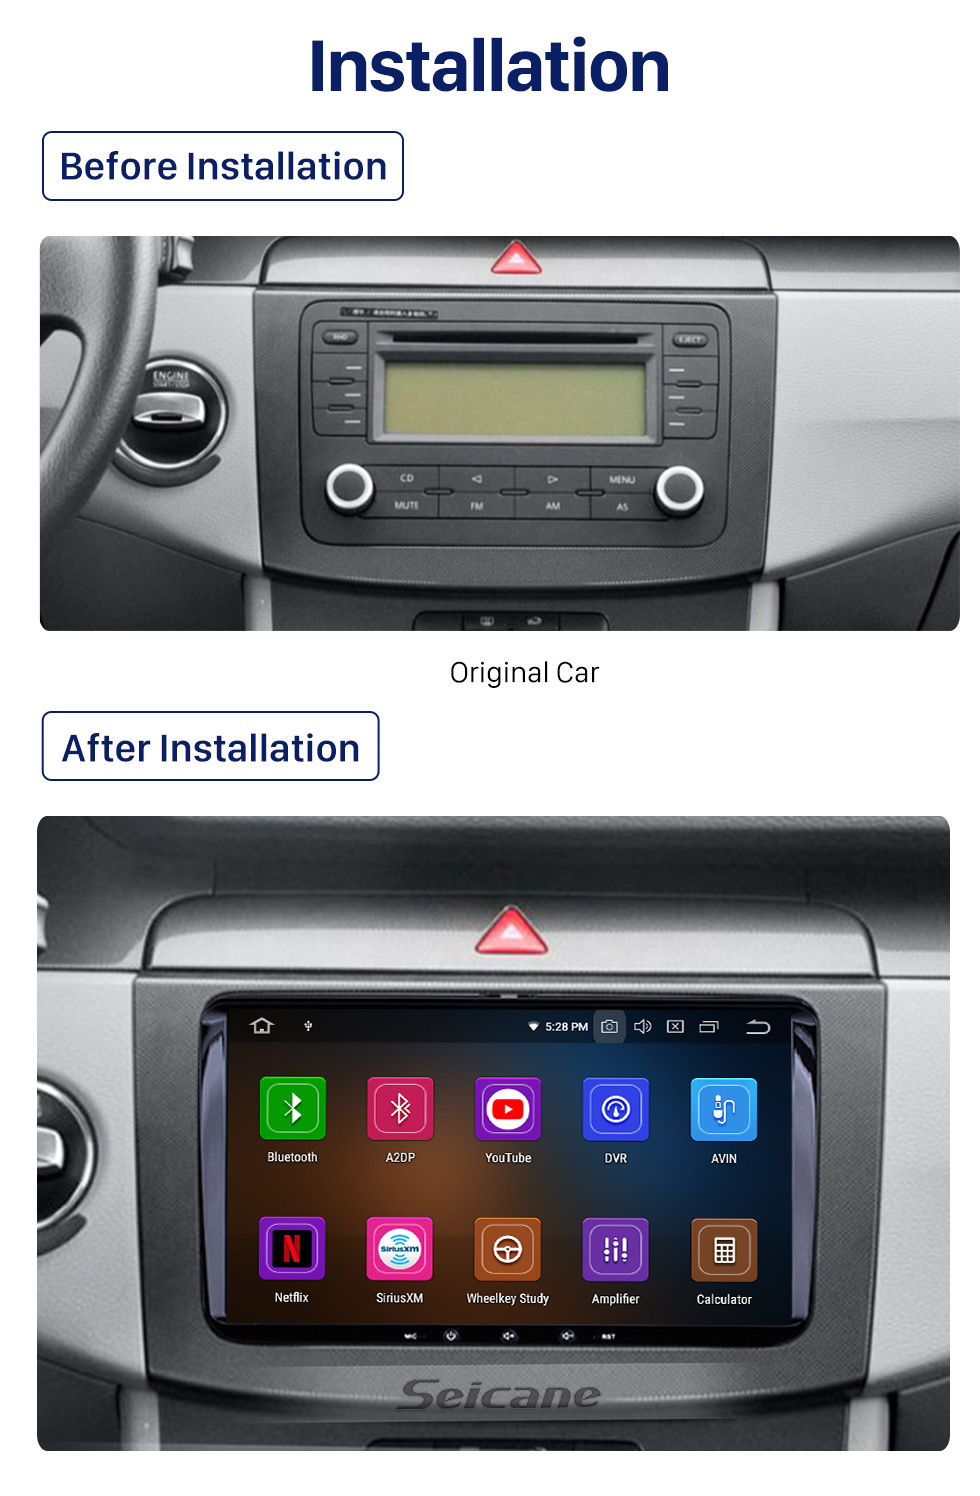 Seicane 2006-2013 Skoda Praktik Android 10.0 Navegación GPS Auto Reproductor de DVD Sistema de soporte Cámara retrovisora Bluetooth Radio Vínculo espejo OBD2 DVR 3G WiFi Pantalla táctil táctil